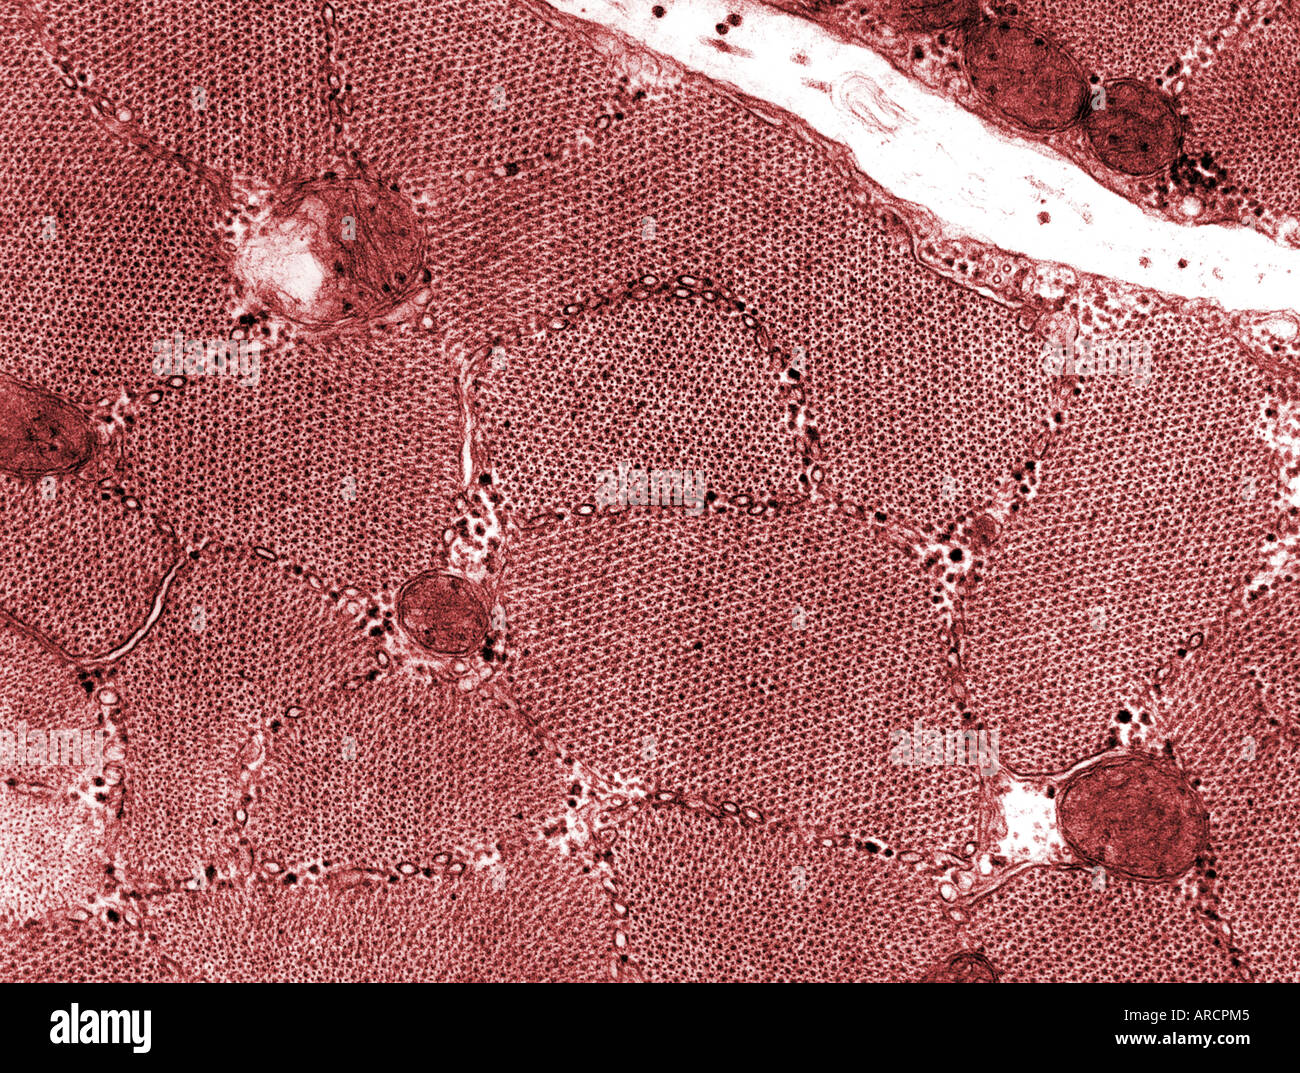 Una micrografia elettronica a trasmissione (TEM) del muscolo scheletrico in sezione trasversale. Foto Stock